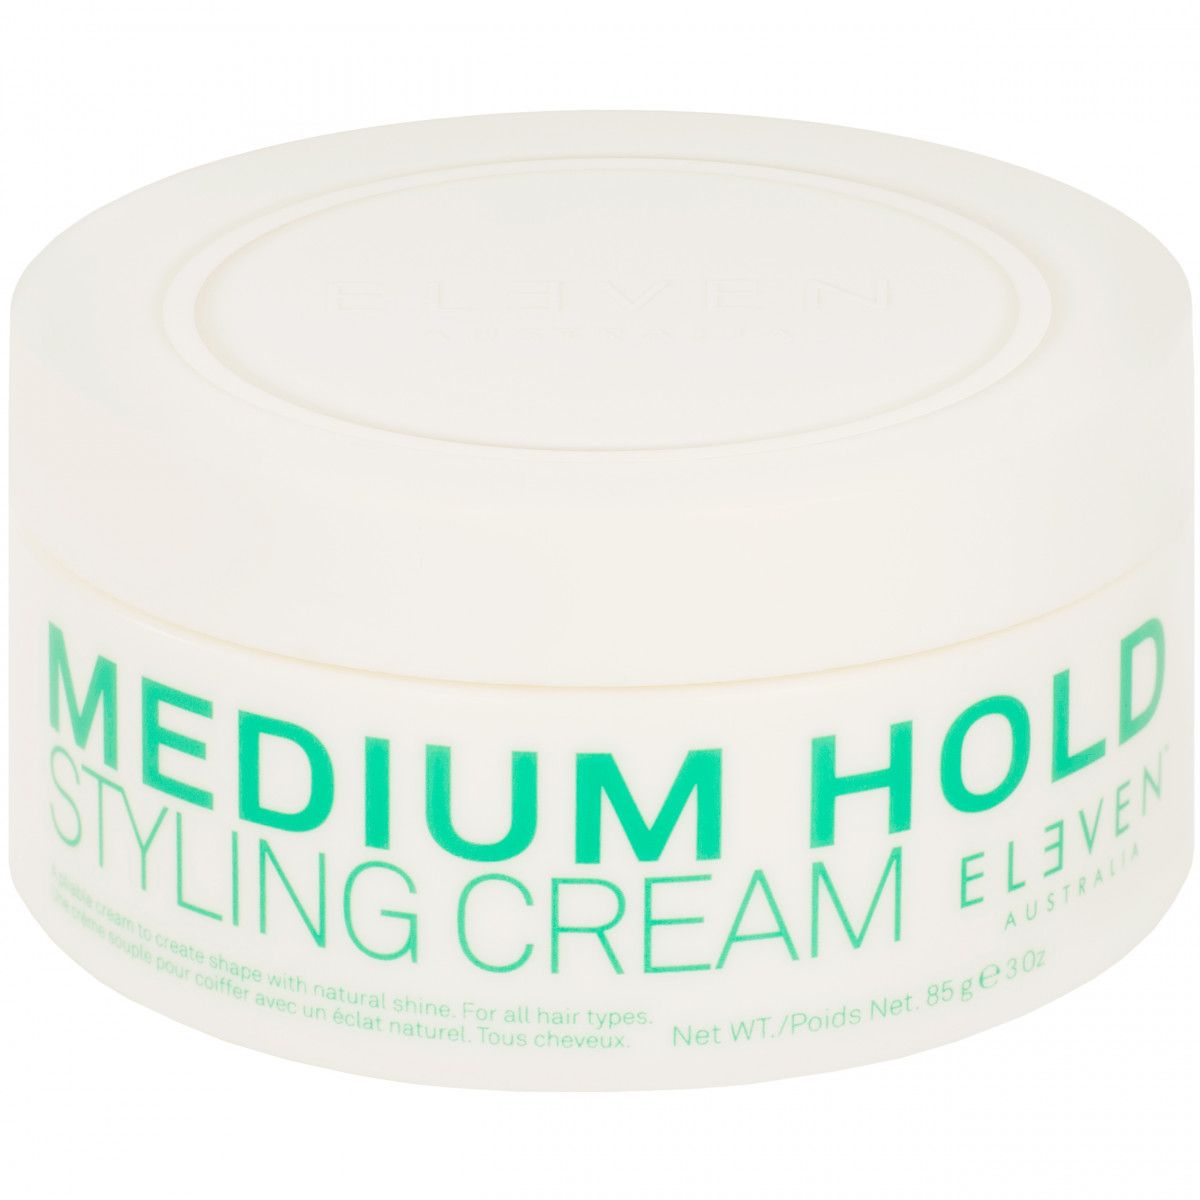 Eleven Australia Medium Hold Styling Cream - krem do włosów, zapewnia średnie utrwalenie, 85g